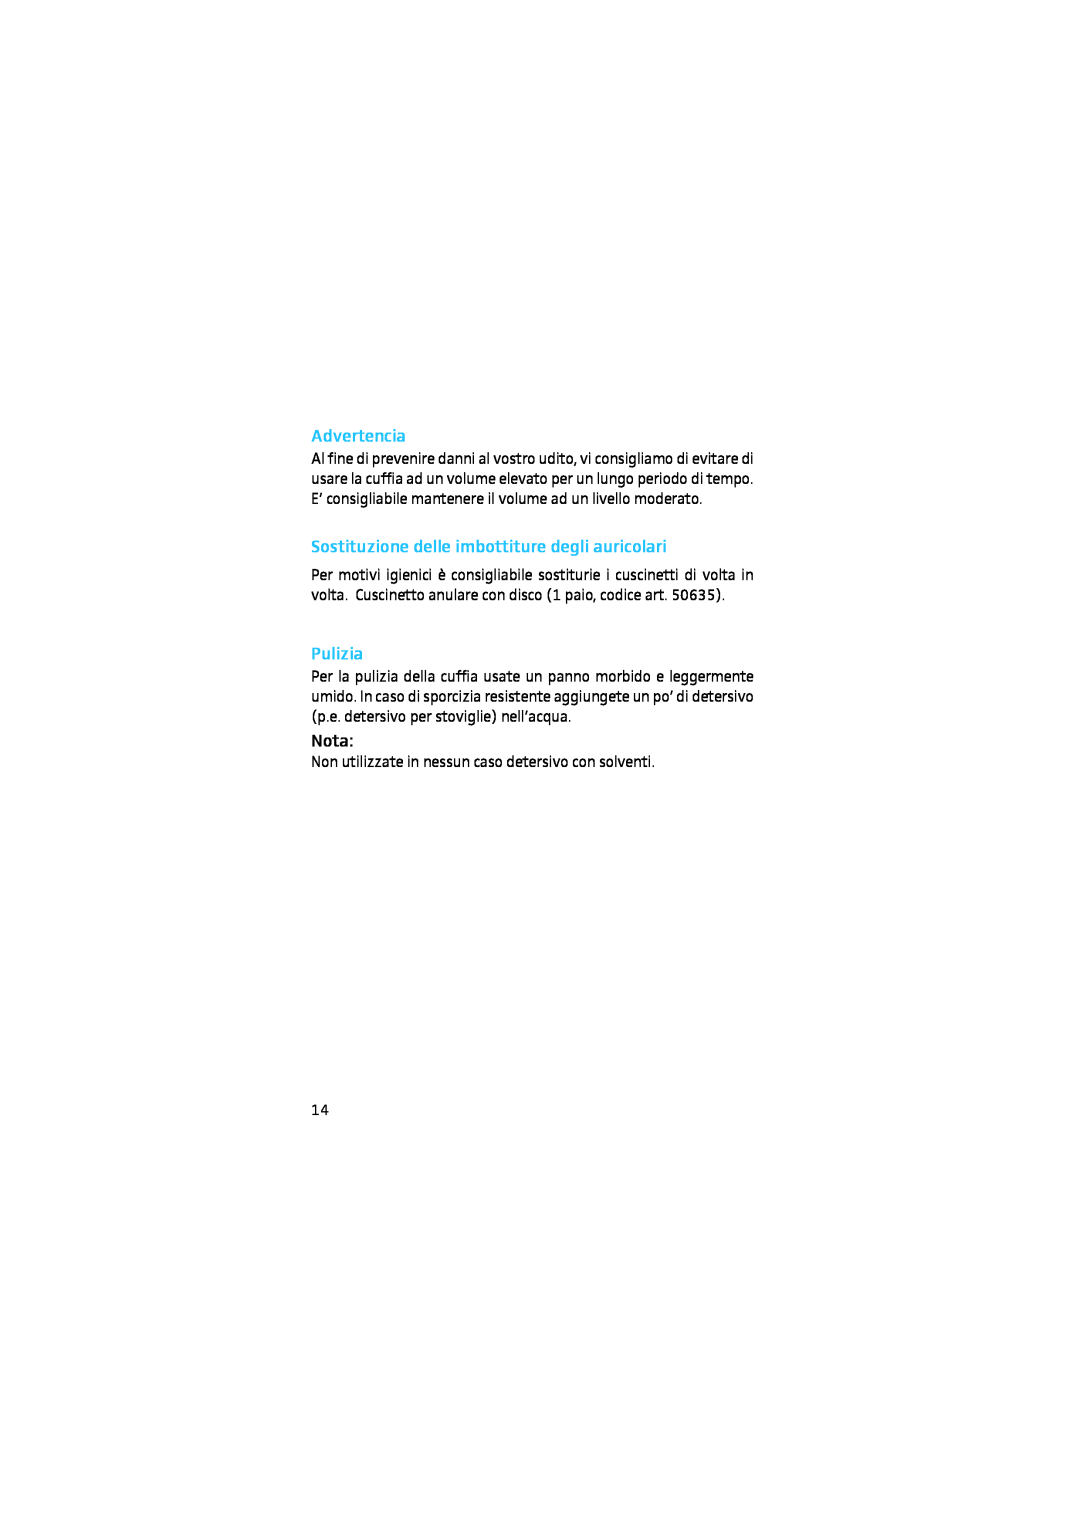 Sennheiser HD 650, 9969 instruction manual Advertencia, Sostituzione delle imbottiture degli auricolari, Pulizia, Nota 